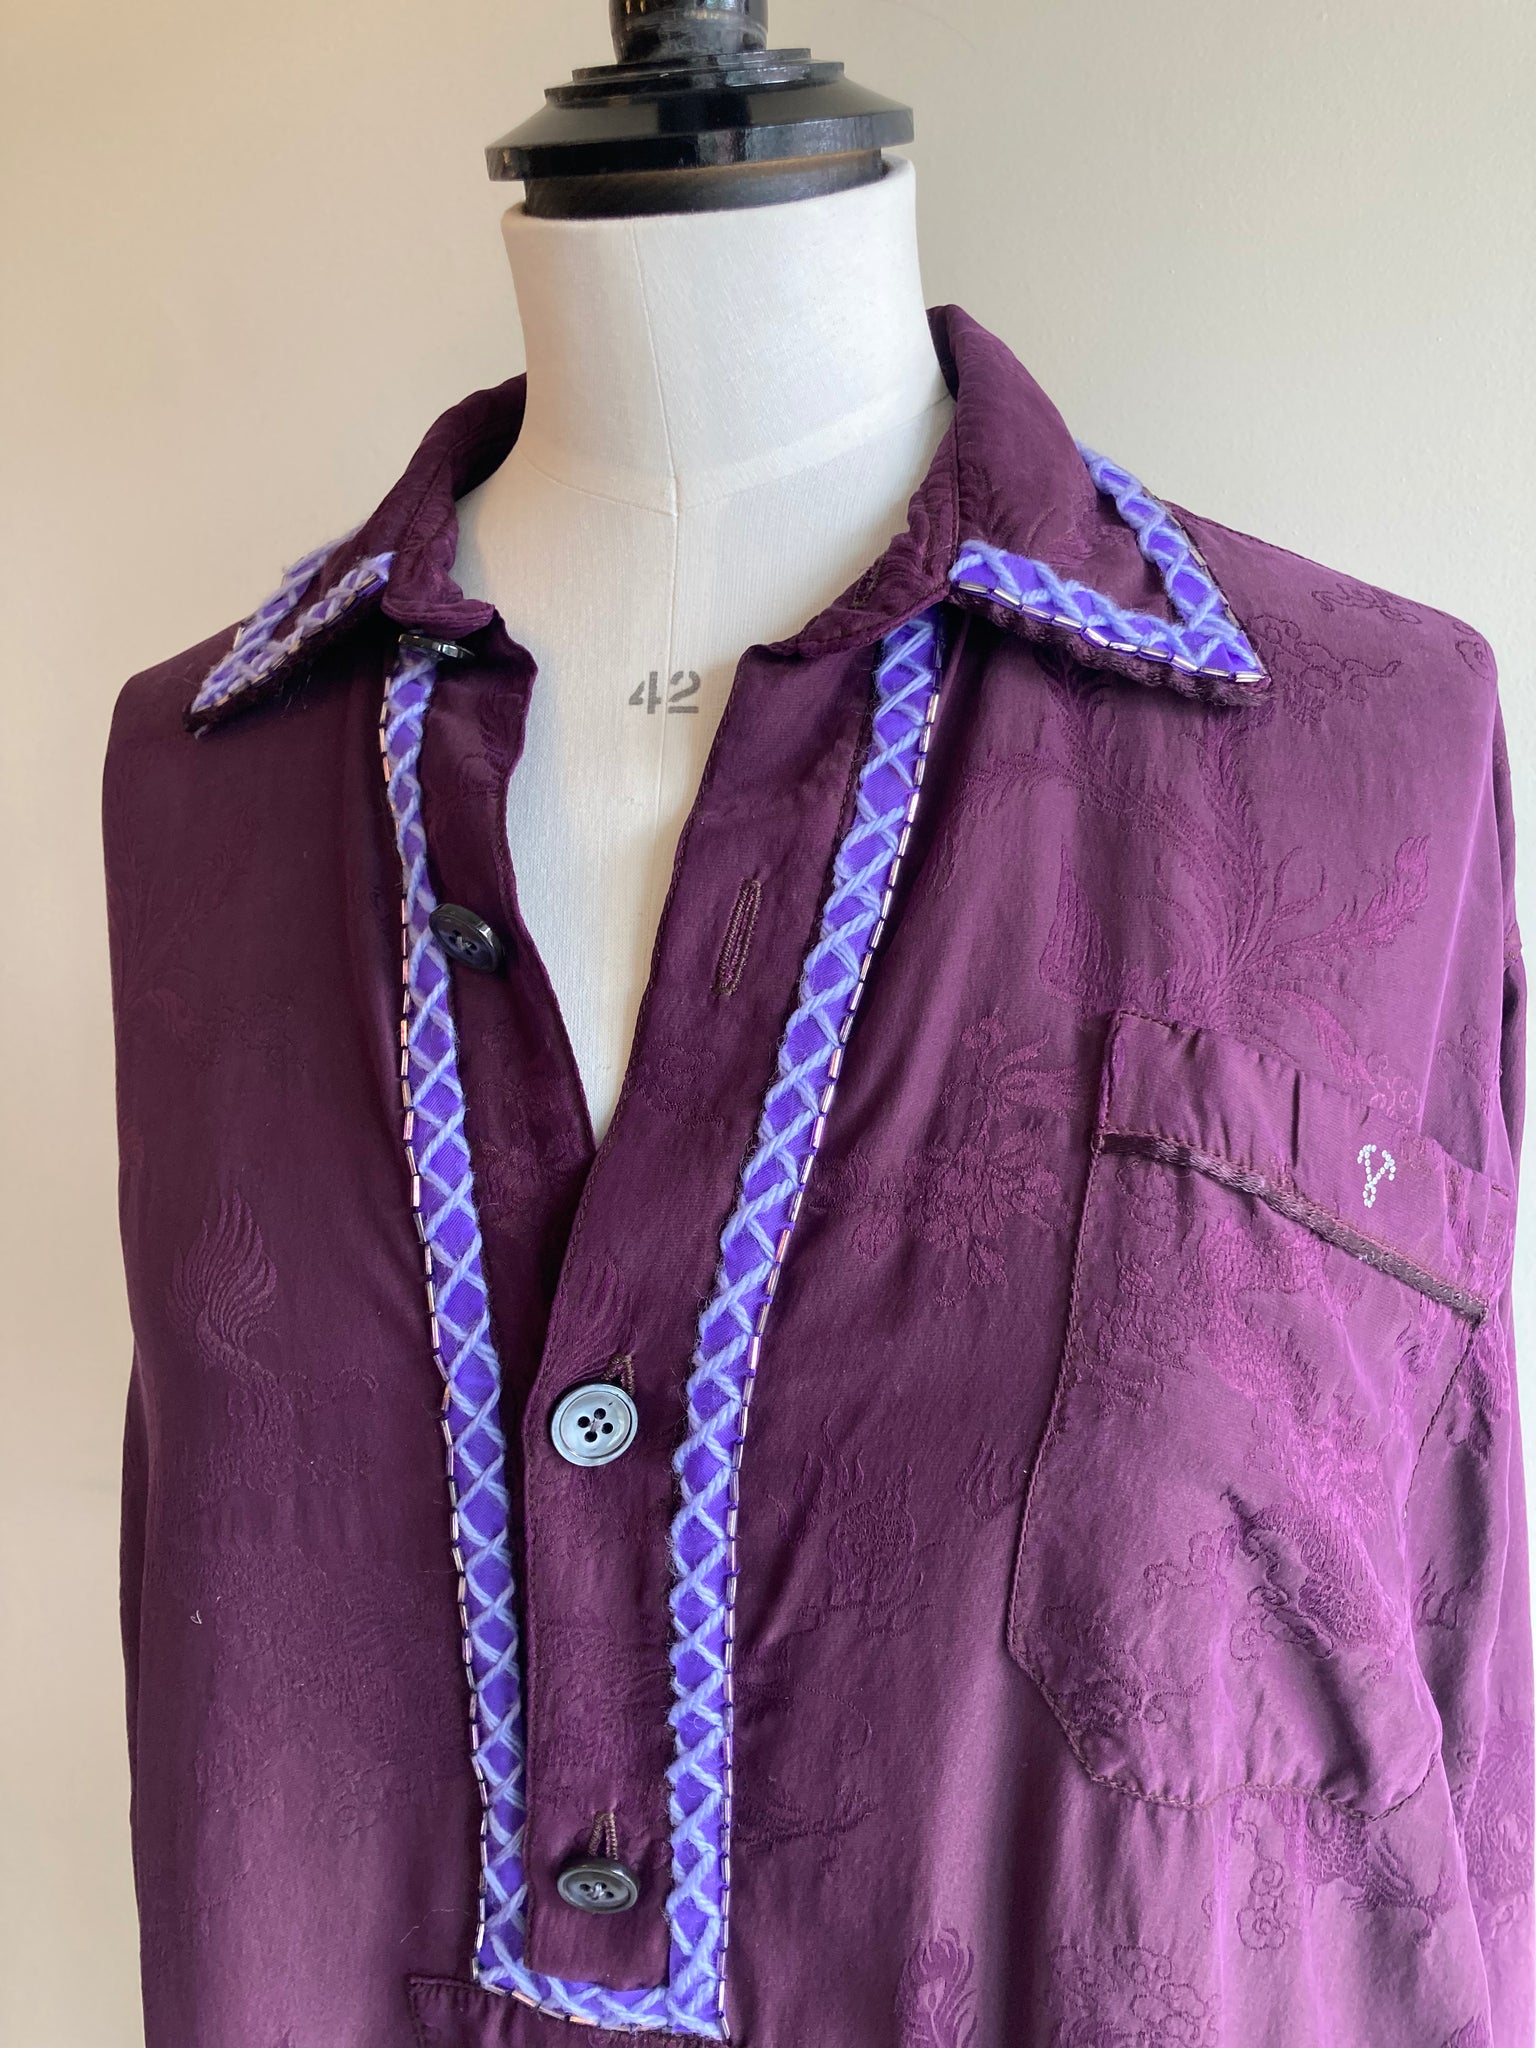 Embellished Silk Tunic